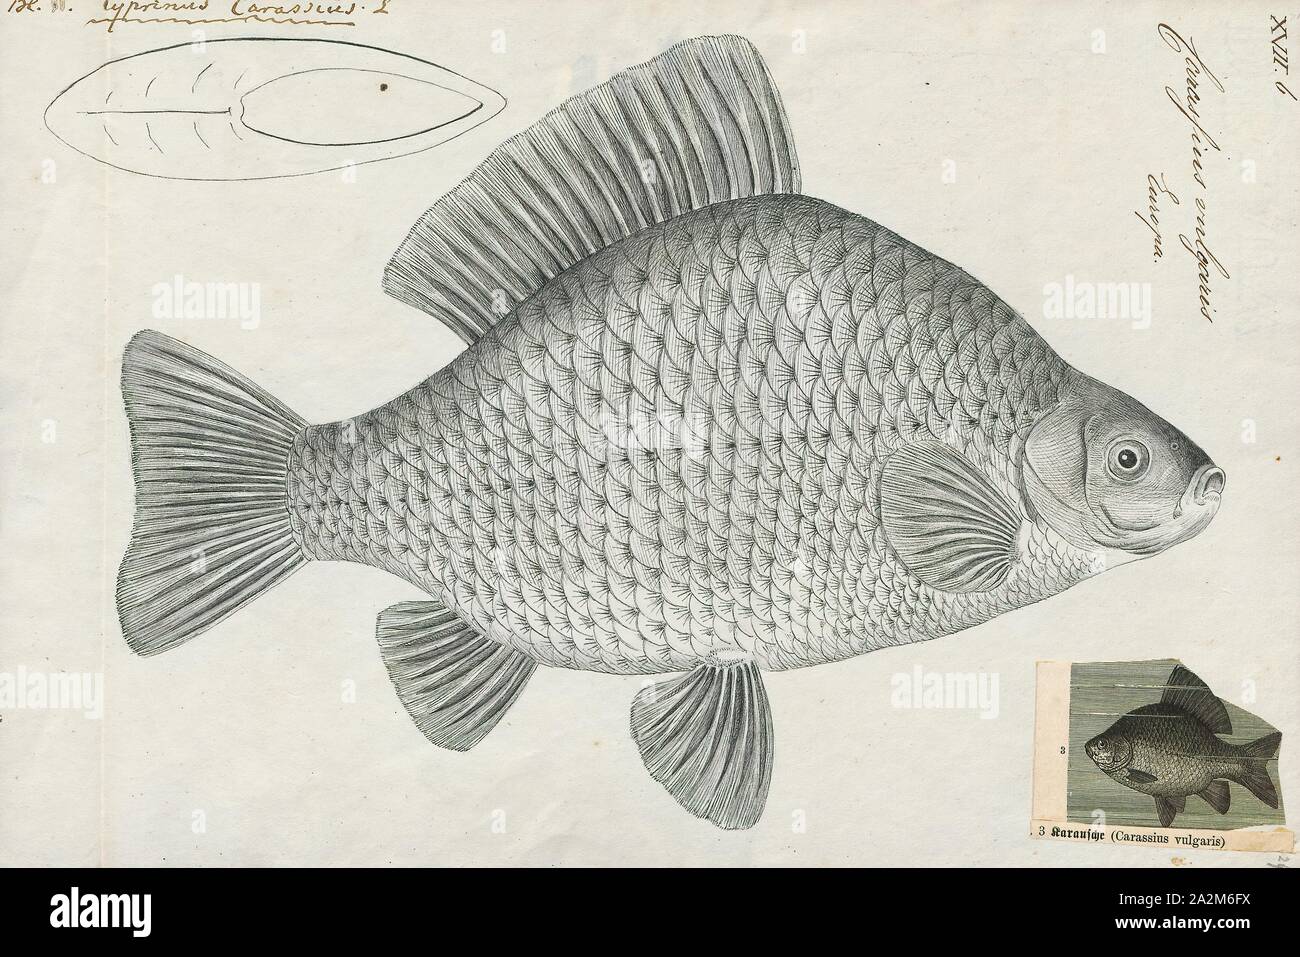 Carassius vulgaris, Imprimer, Carassius est un genre de la famille des poissons à nageoires Cyprinidae. La plupart des espèces de ce genre sont communément connus comme le carassin carpes, même si ce terme est souvent précisément référence à C. carassius. Le plus connu est le poisson rouge (C. auratus). Ils ont une répartition eurasienne, apparemment originaires plus à l'ouest que les carpes (Cyprinus), qui comprennent la carpe commune (C. carpio), 1774-1804. Banque D'Images